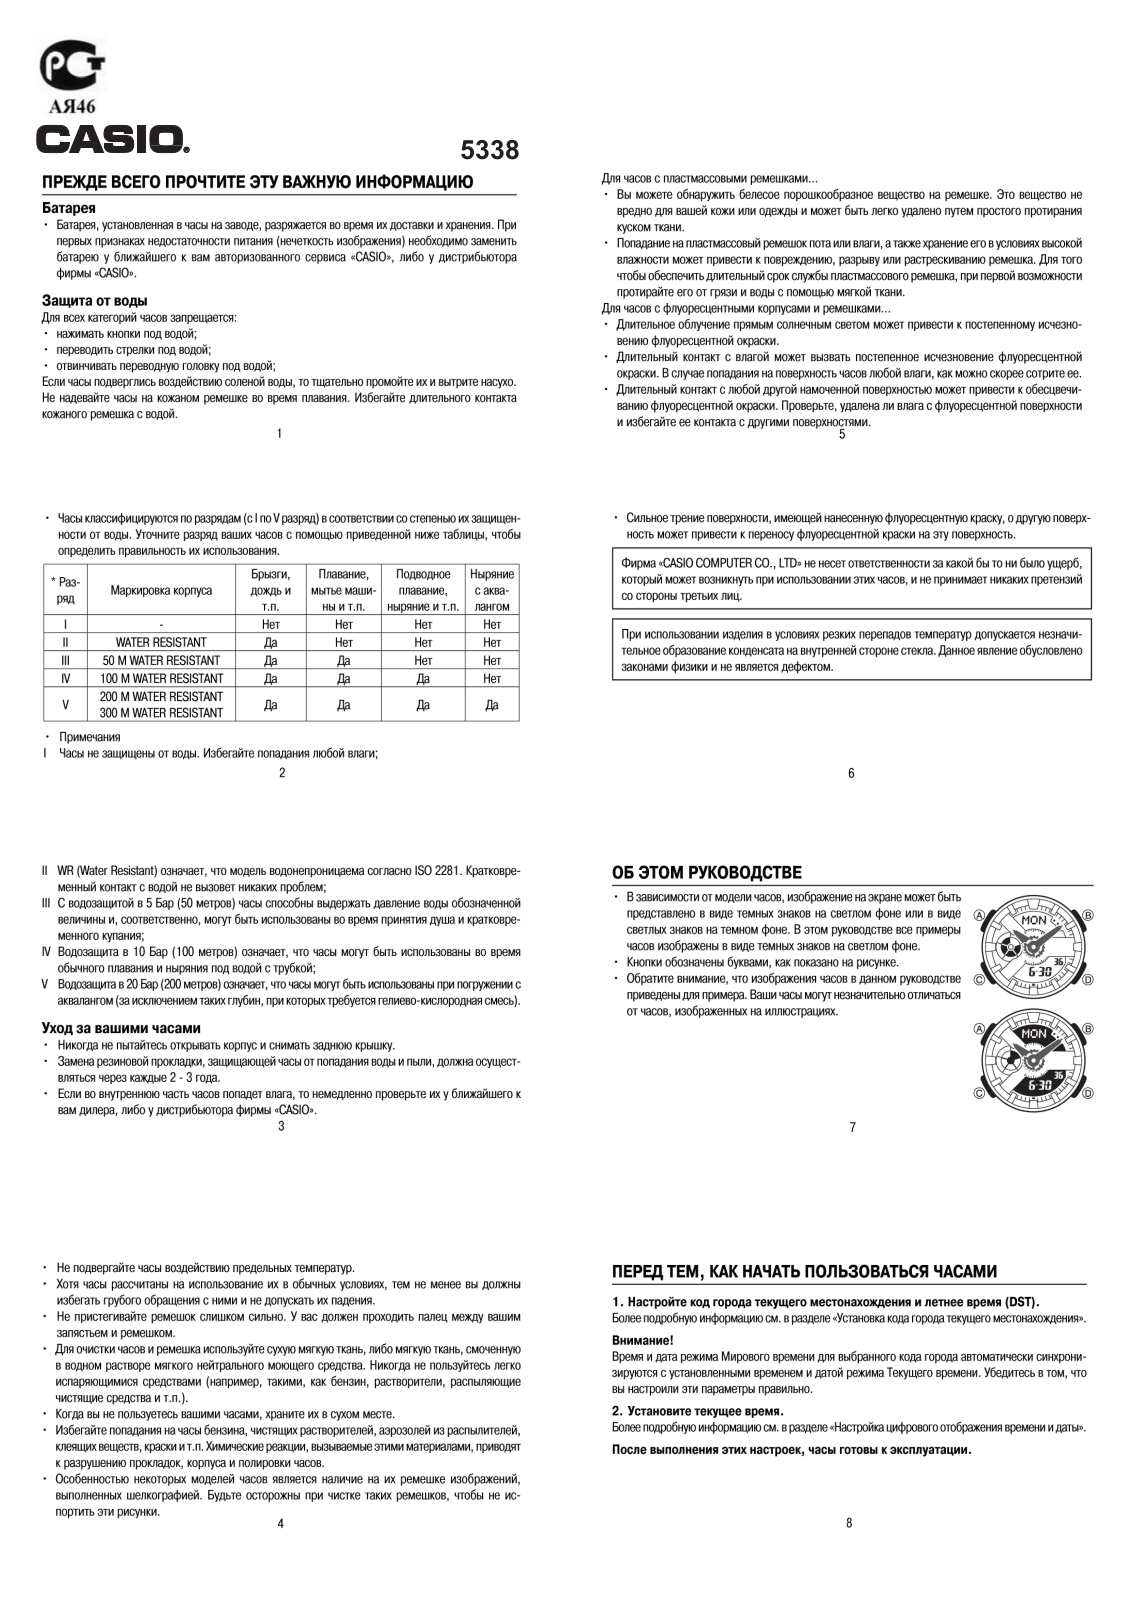 Casio BA-110TP-1A User Manual